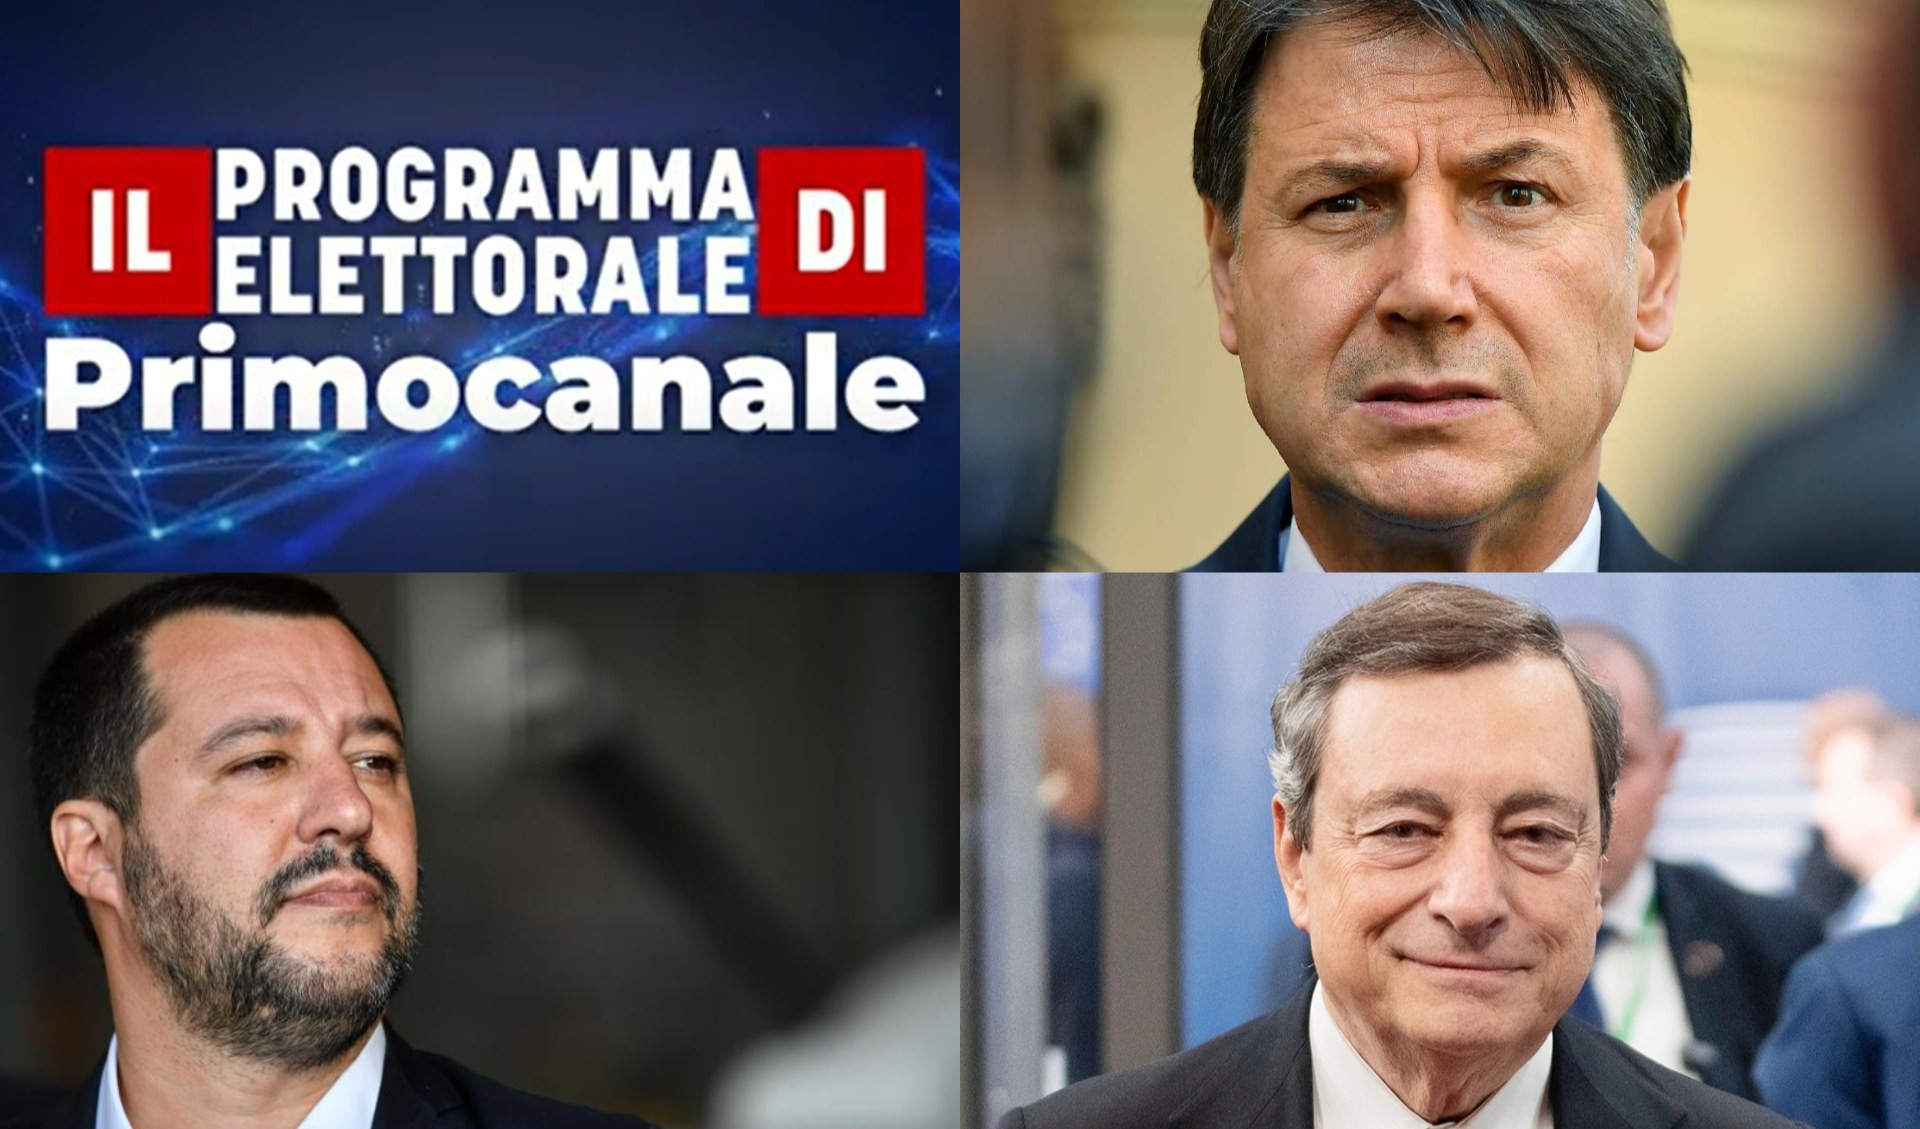 Il Programma elettorale di Primocanale - Crisi di Governo e i rischi per la Liguria